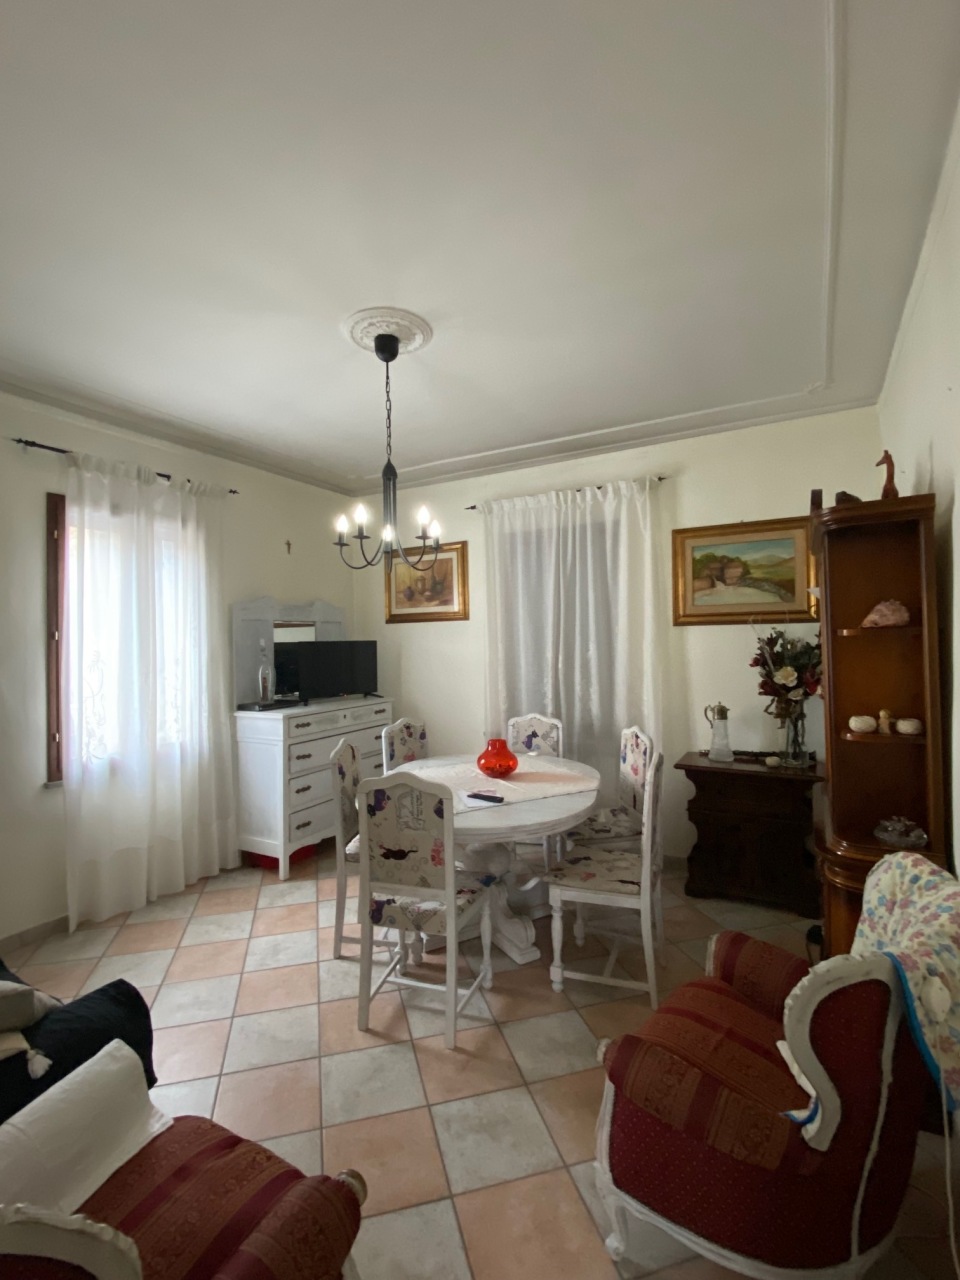 Villa in vendita a Reggio Emilia, 9999 locali, prezzo € 259.000 | PortaleAgenzieImmobiliari.it